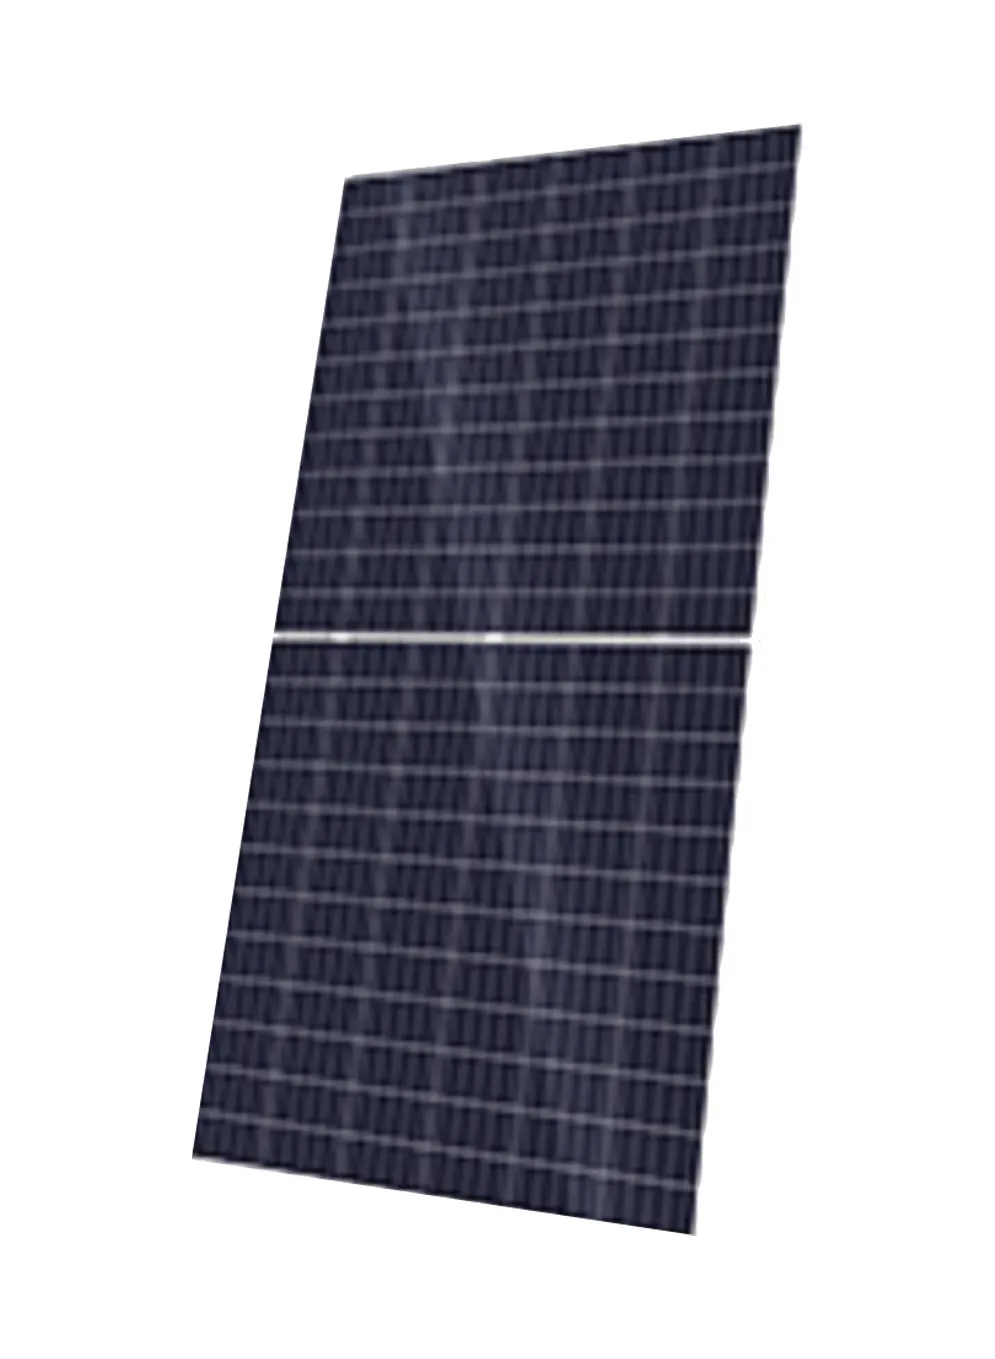 SINO GREEN Solar KuMax CS3U-400MS 400W Solar Panel